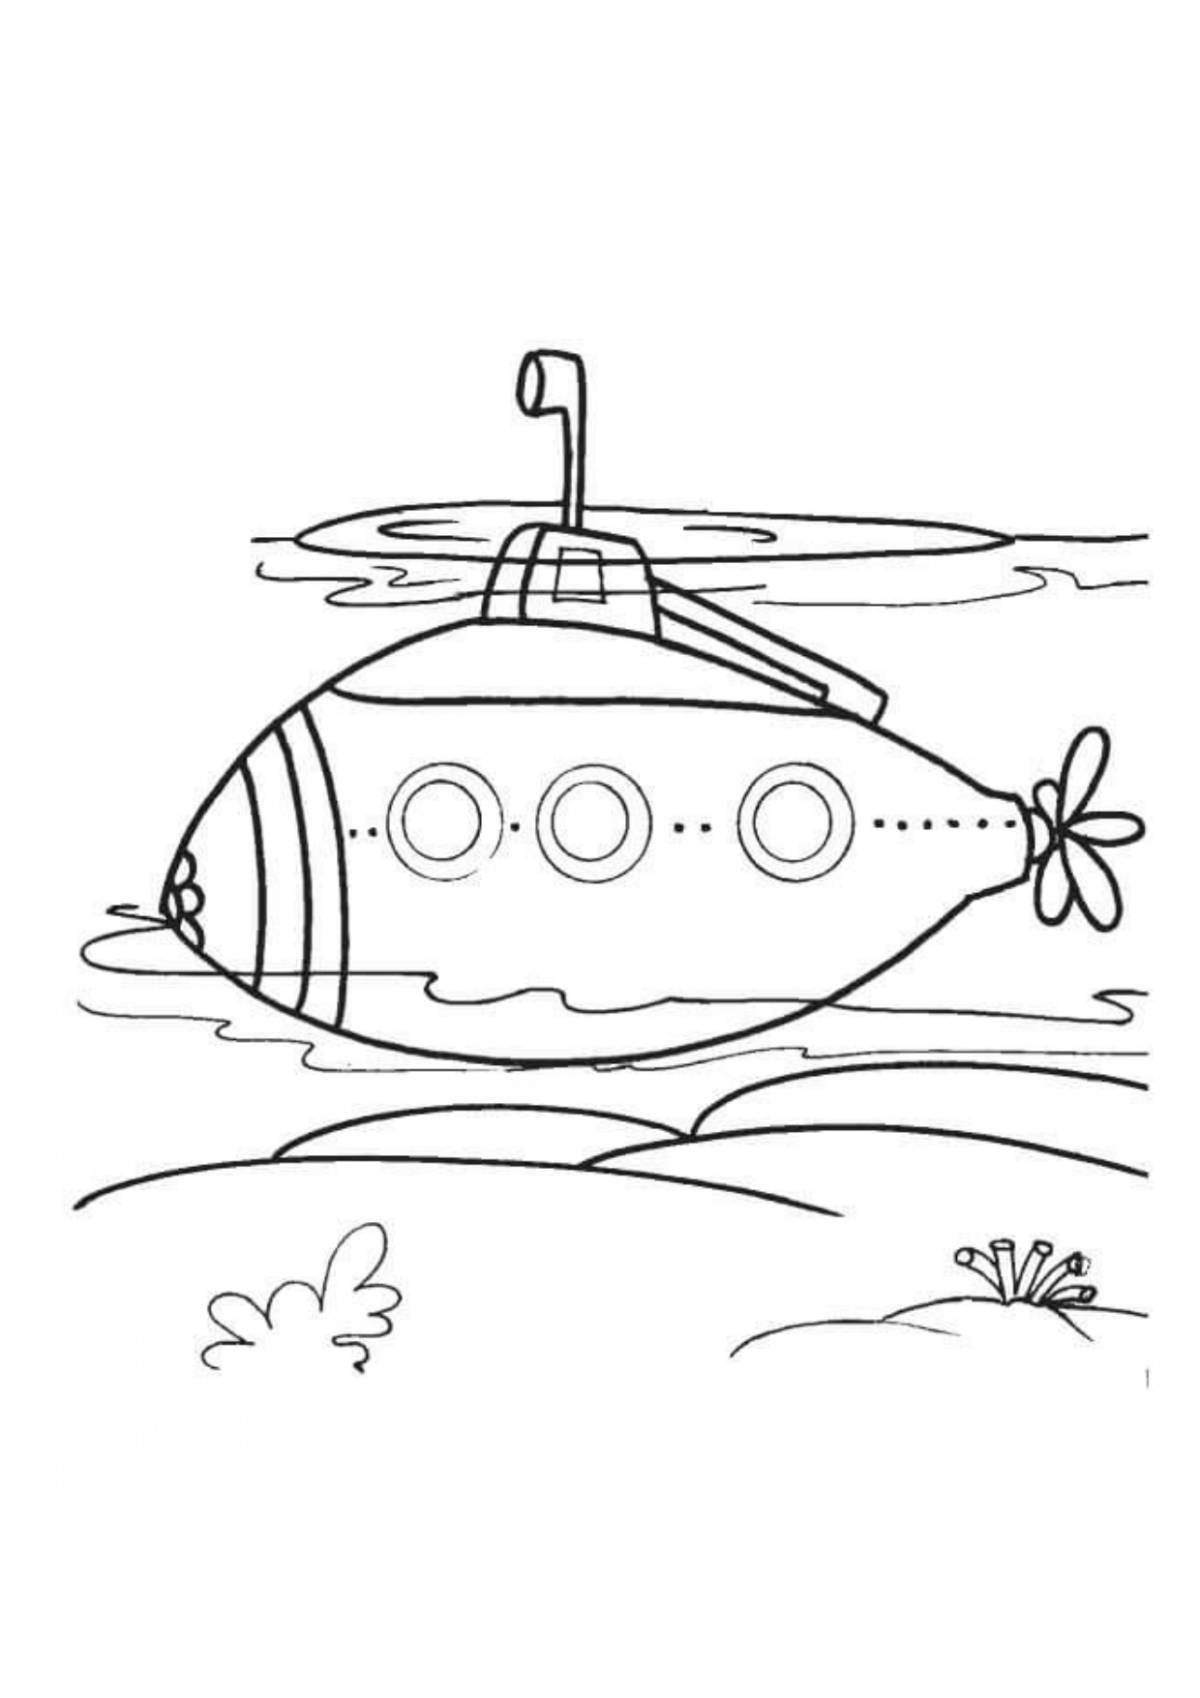 Увлекательная раскраска подводной лодки для детей